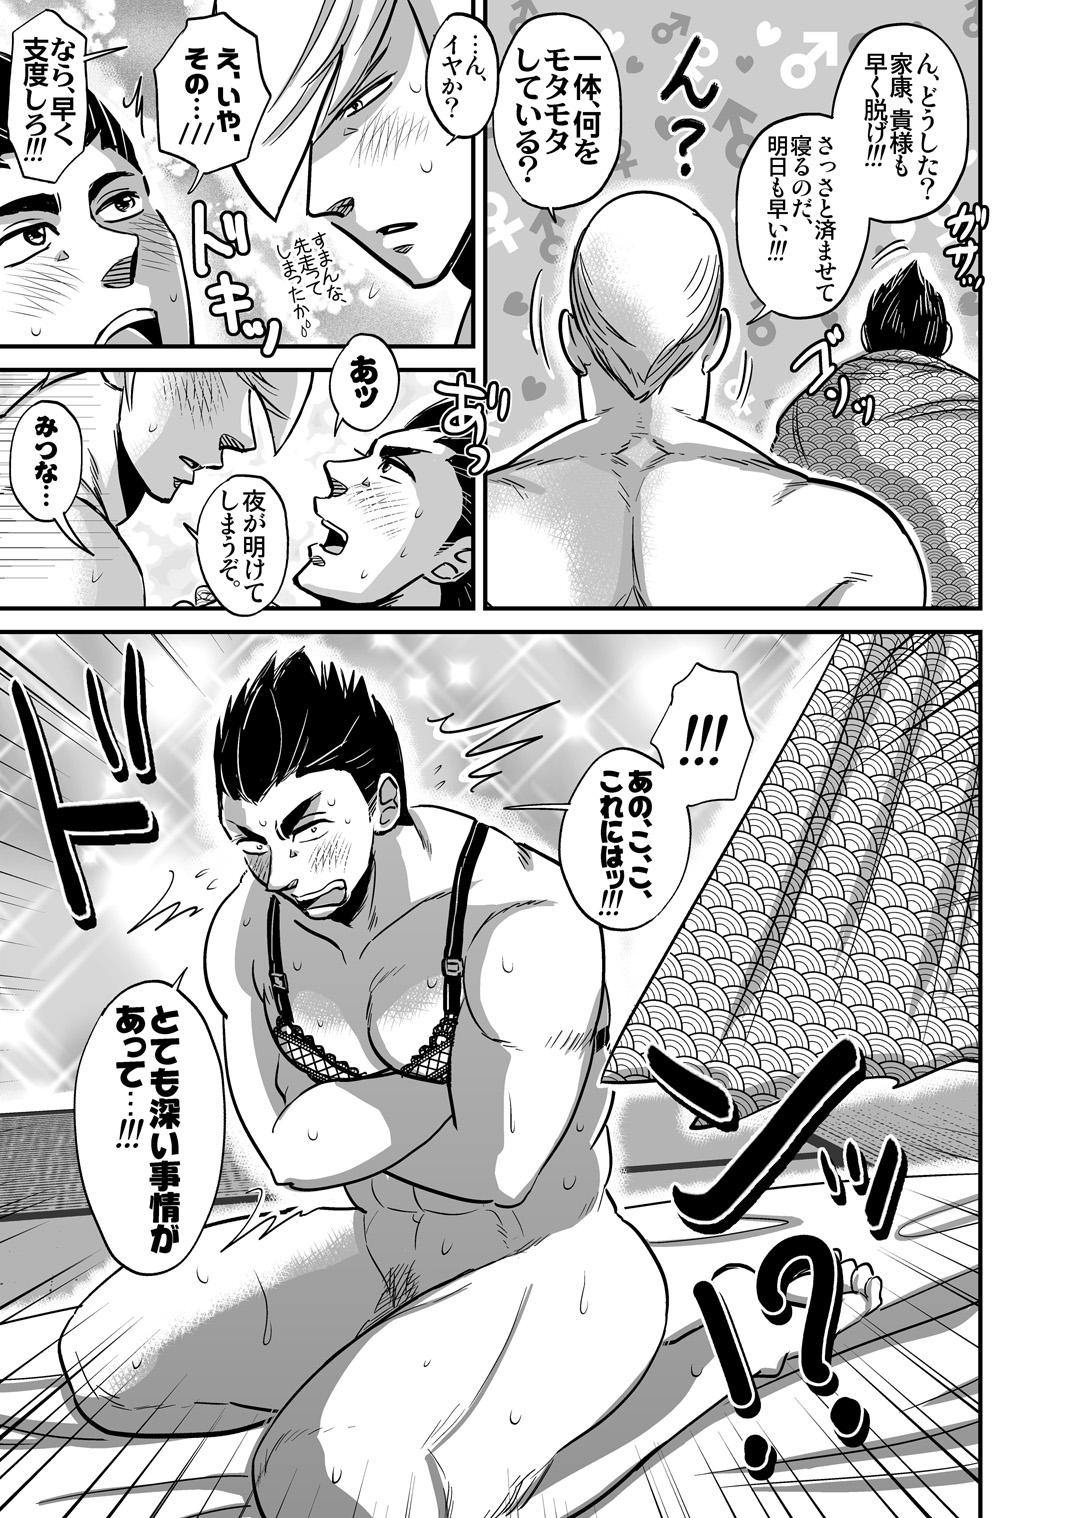 Women Sucking Dicks Multi-HOMO manga at home - Sengoku basara Bucetinha - Page 6